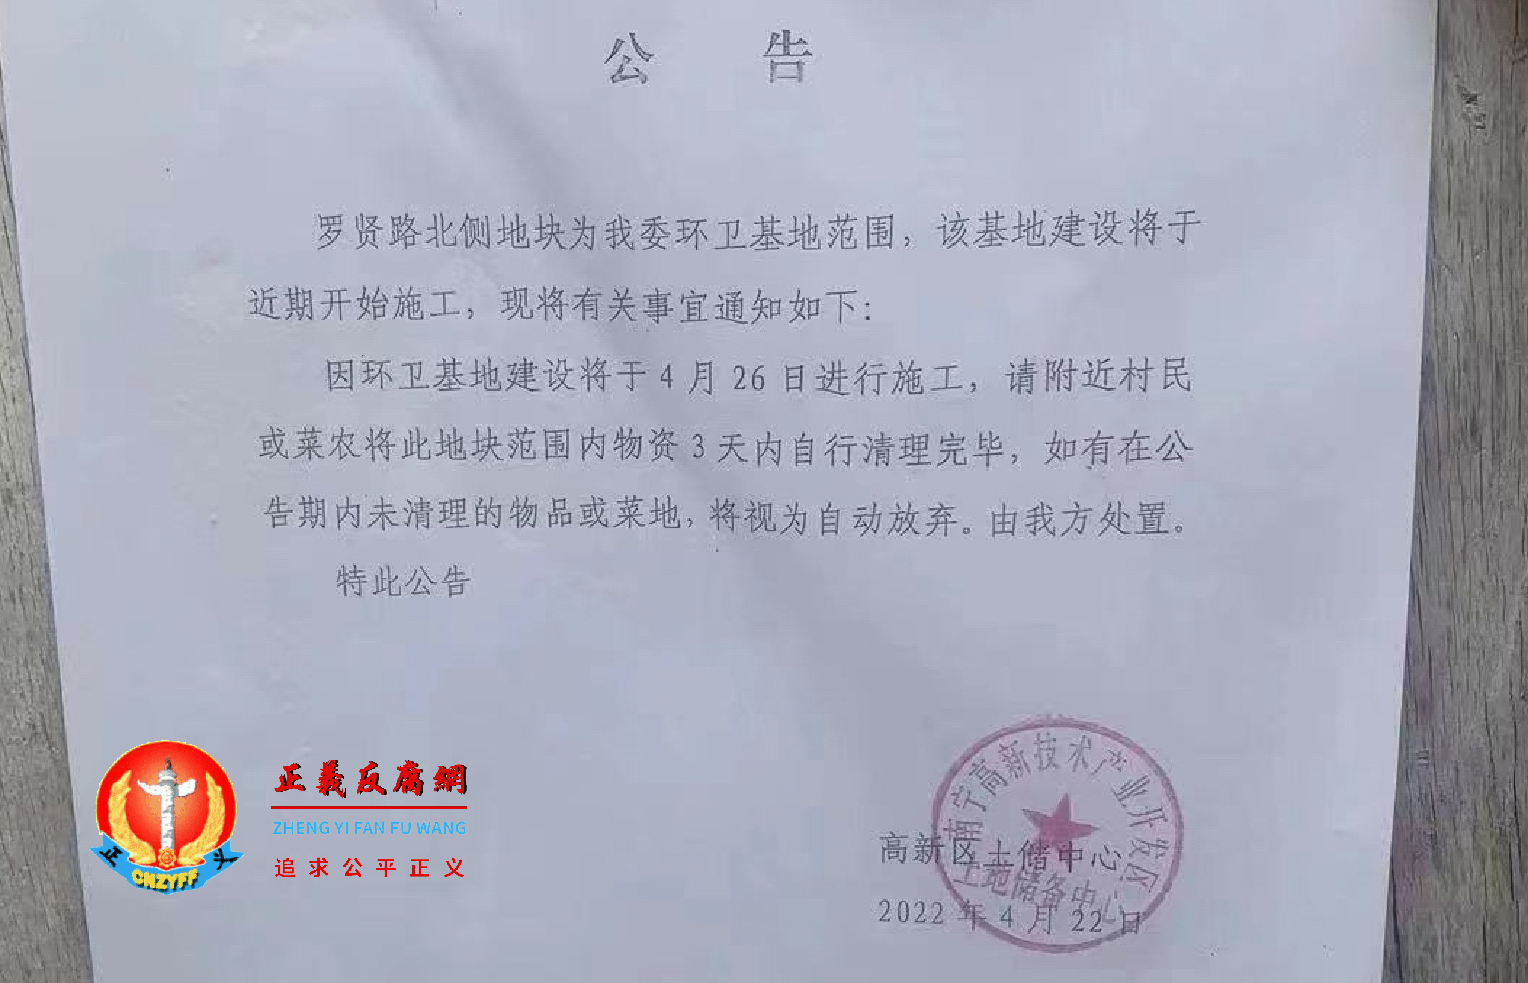 广西南宁市高新技术产业开发区土地储备中心贴出的公告。.png